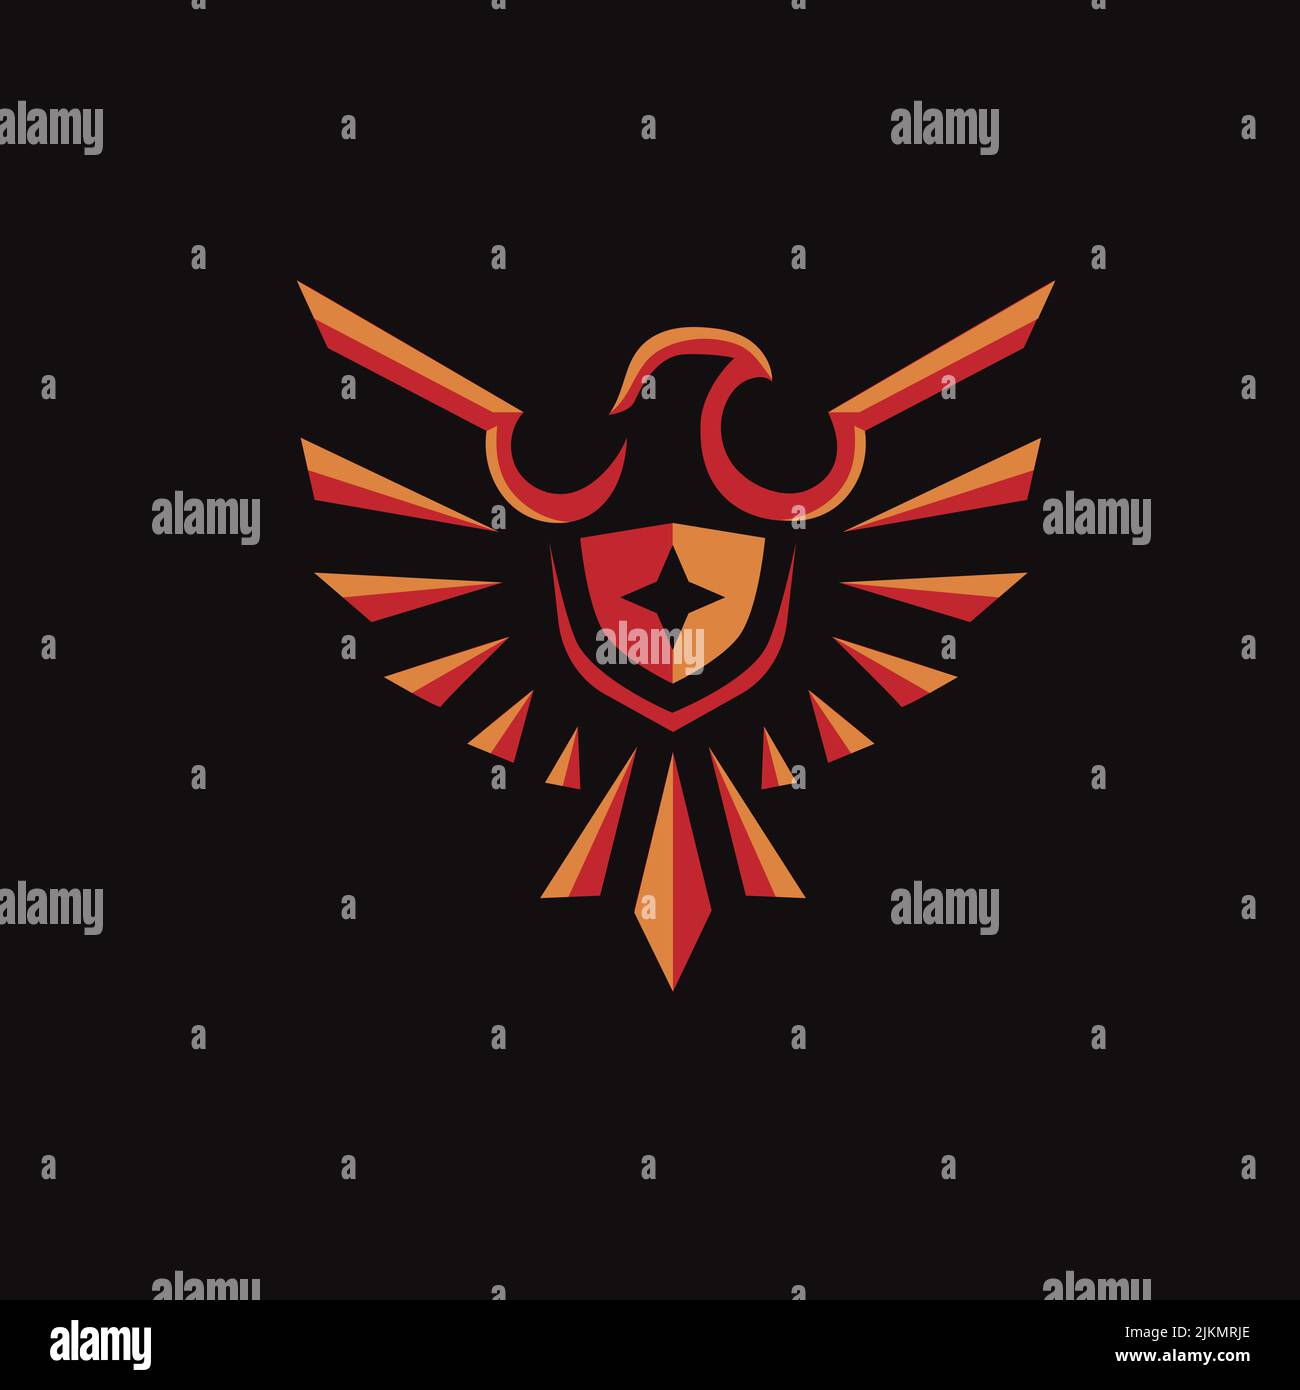 Dessin vectoriel d'un logo en forme d'aigle avec une étoile au milieu sur fond noir Illustration de Vecteur